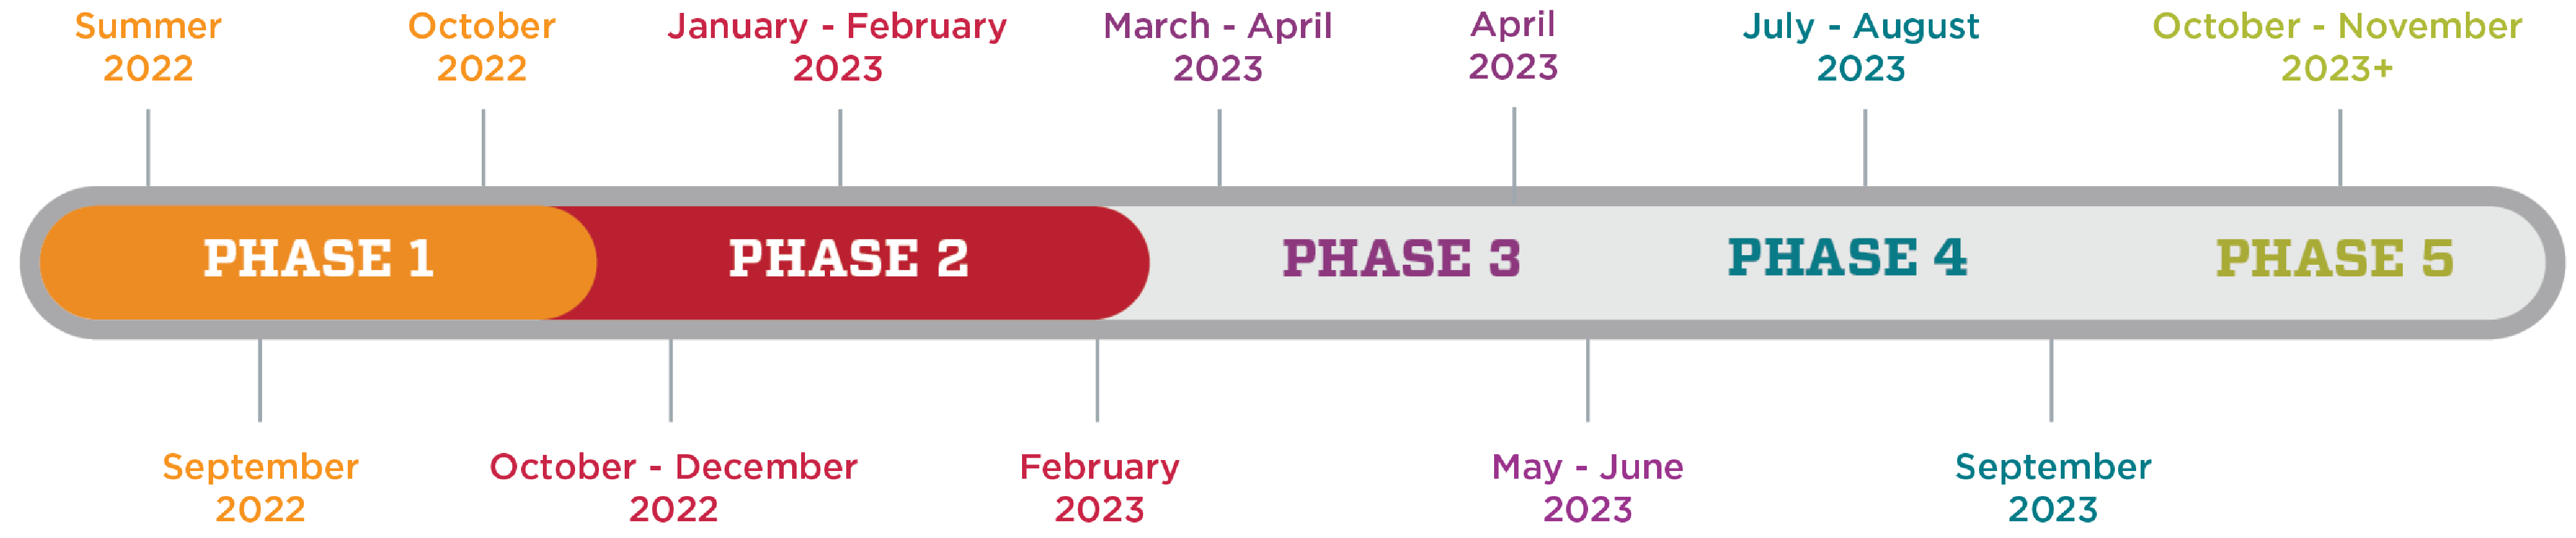 Um gráfico mostrando a linha do tempo da Pesquisa de Clima do HSC. A fase 1 é do verão de 2022 a outubro de 2022. A fase 2 é de outubro de 2022 a fevereiro de 2023. A fase 3 é de março de 2023 a junho de 2023. A fase 4 é de julho de 2023 a setembro de 2023. A fase 5 é de outubro de 2023 em diante.